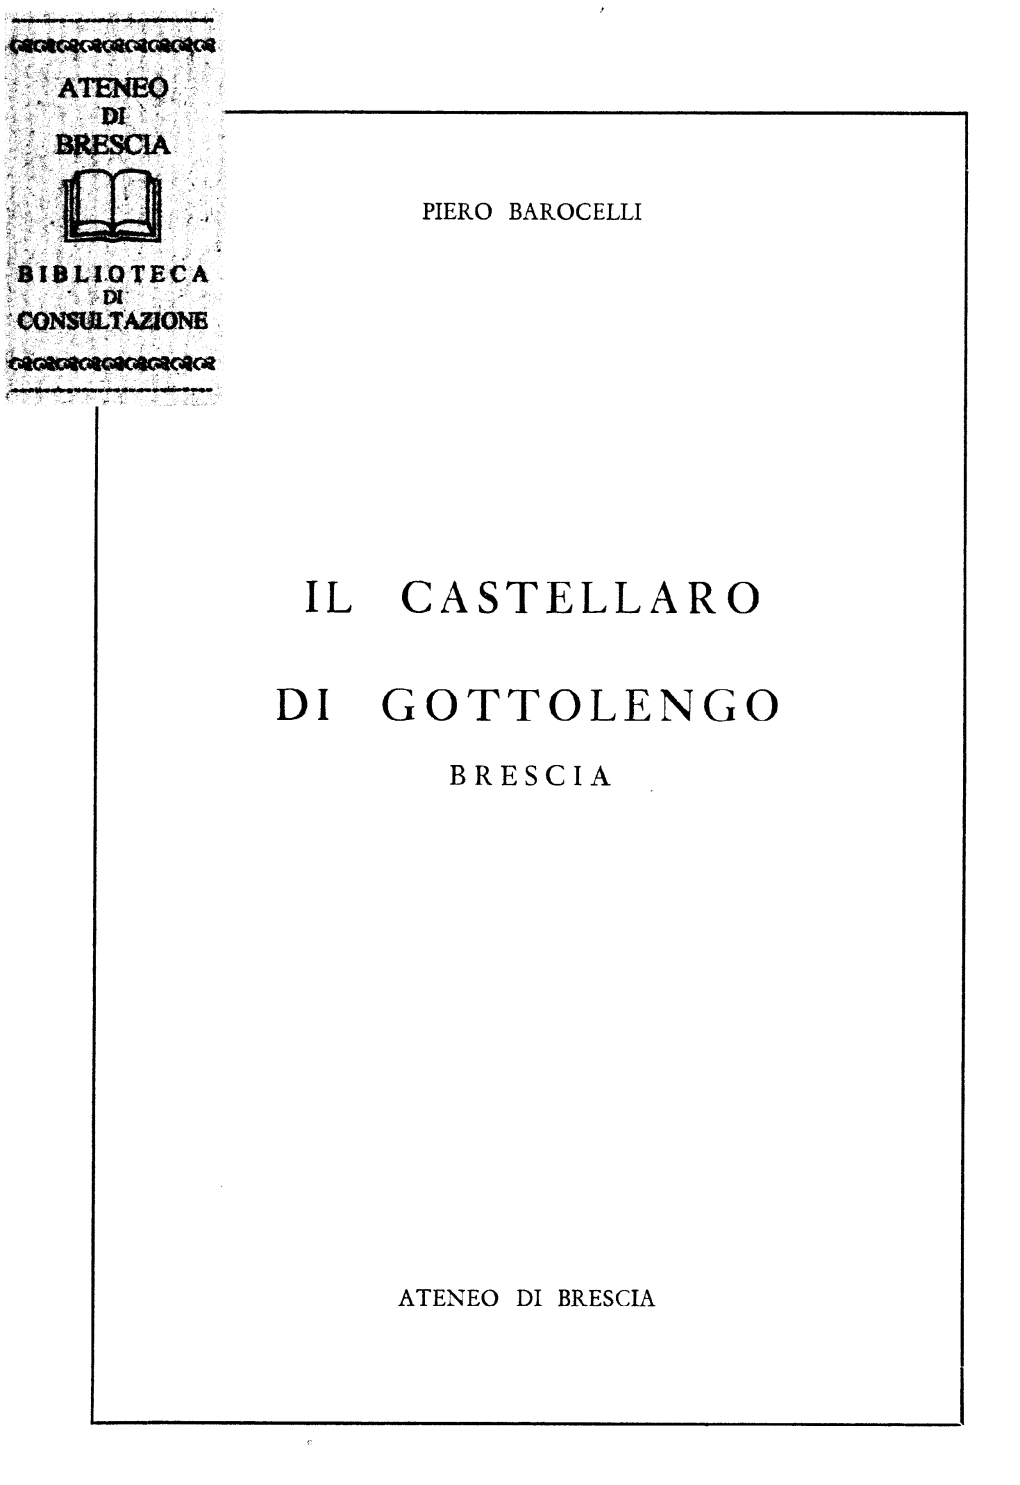 Il Castellaro Di Gottolengo - Brescia